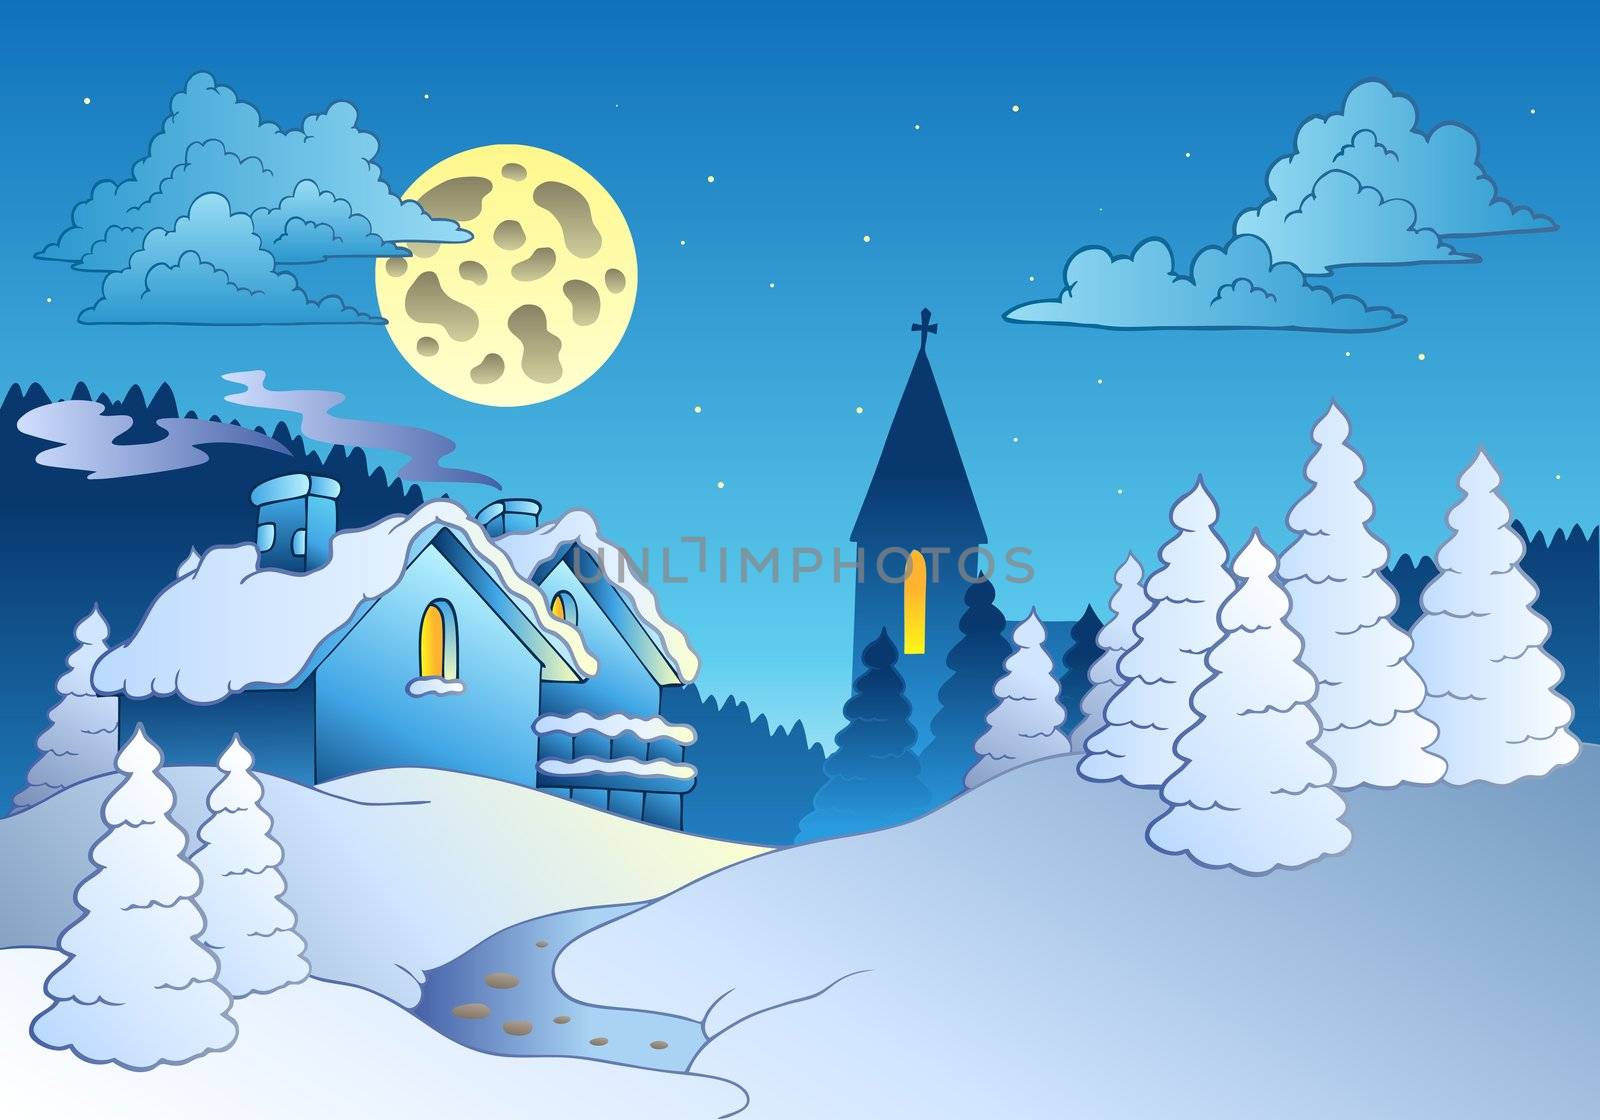 Small village in winter - vector illustration.